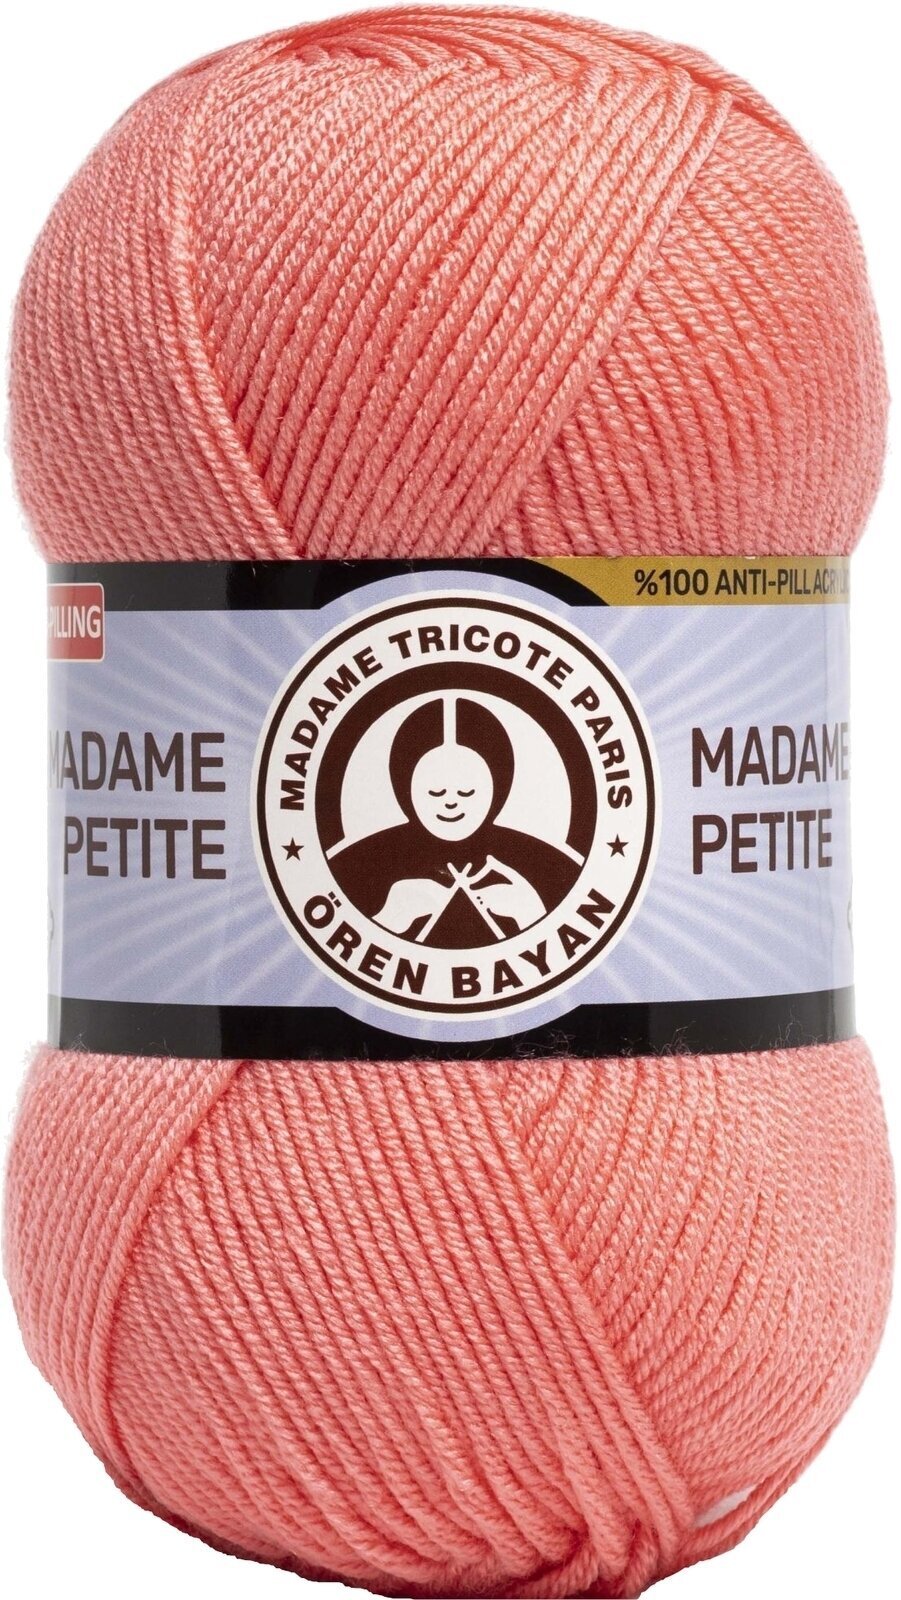 Νήμα Πλεξίματος Madame Tricote Paris Madame Petite 3848 36 Νήμα Πλεξίματος